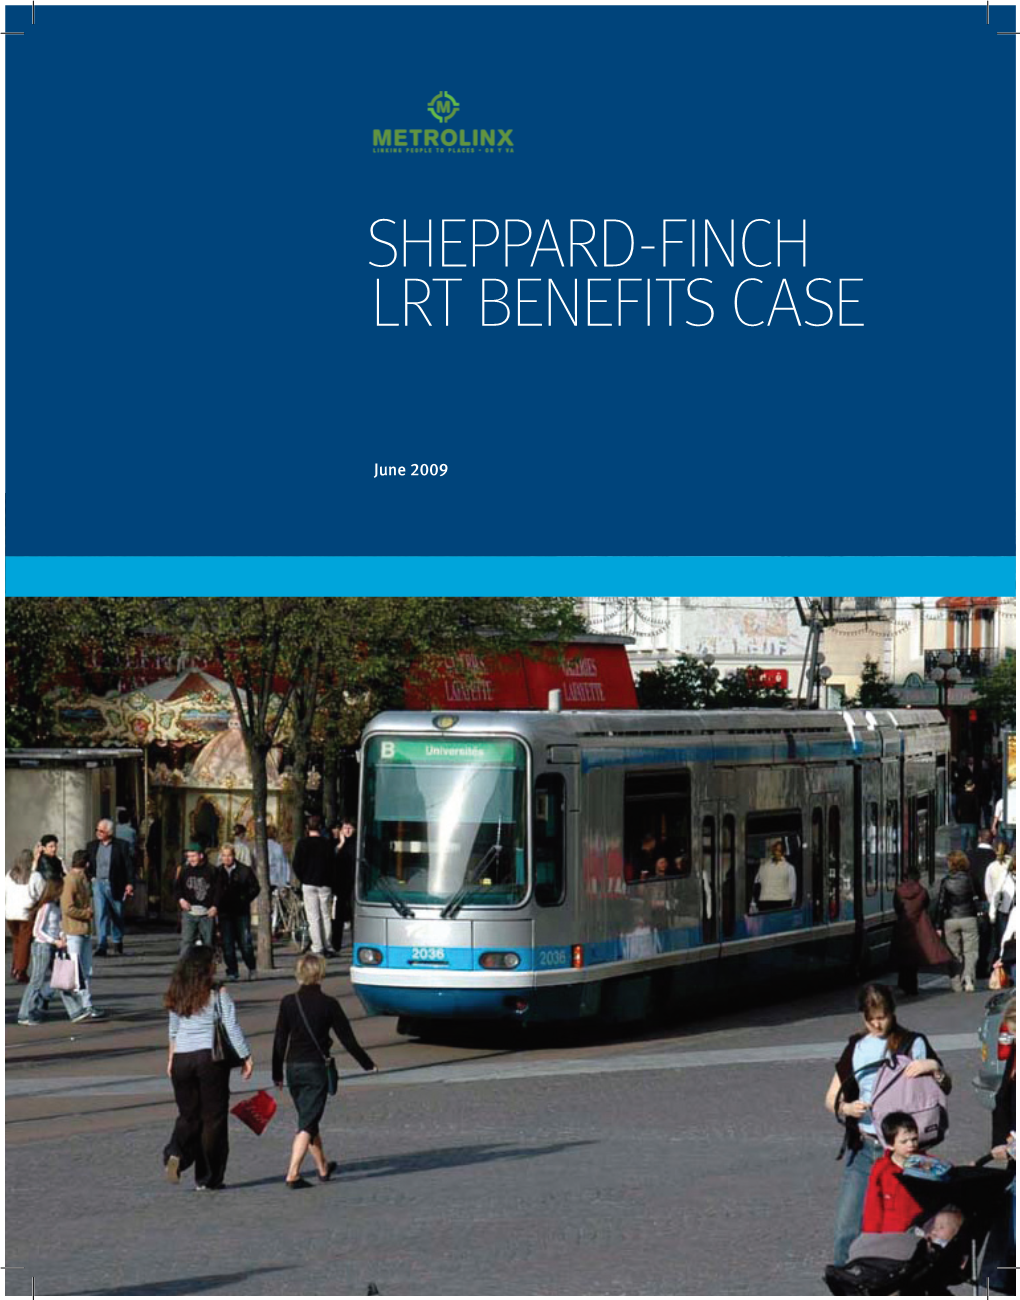 Sheppard-Finch LRT Benefits Case